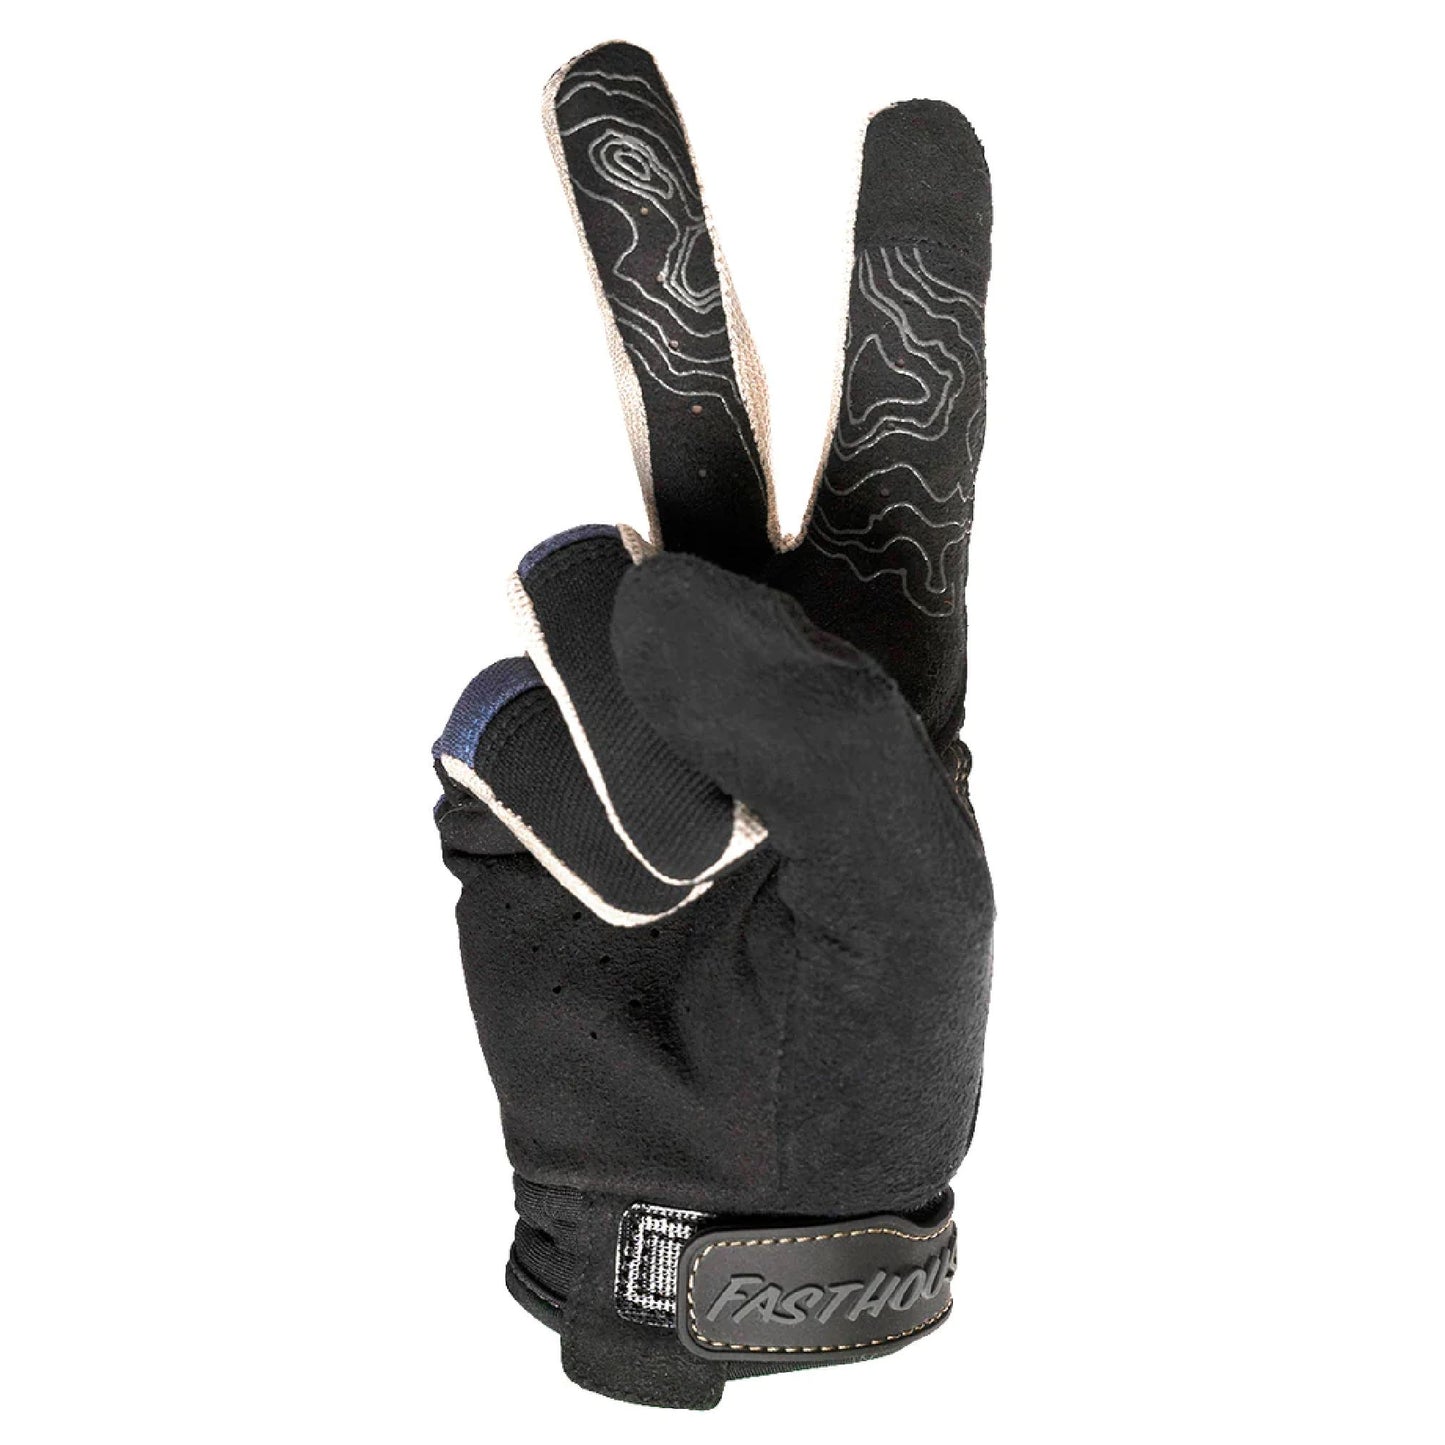 Fasthouse Ronin Ridgeline Glove Midnight Navy Bike Gloves